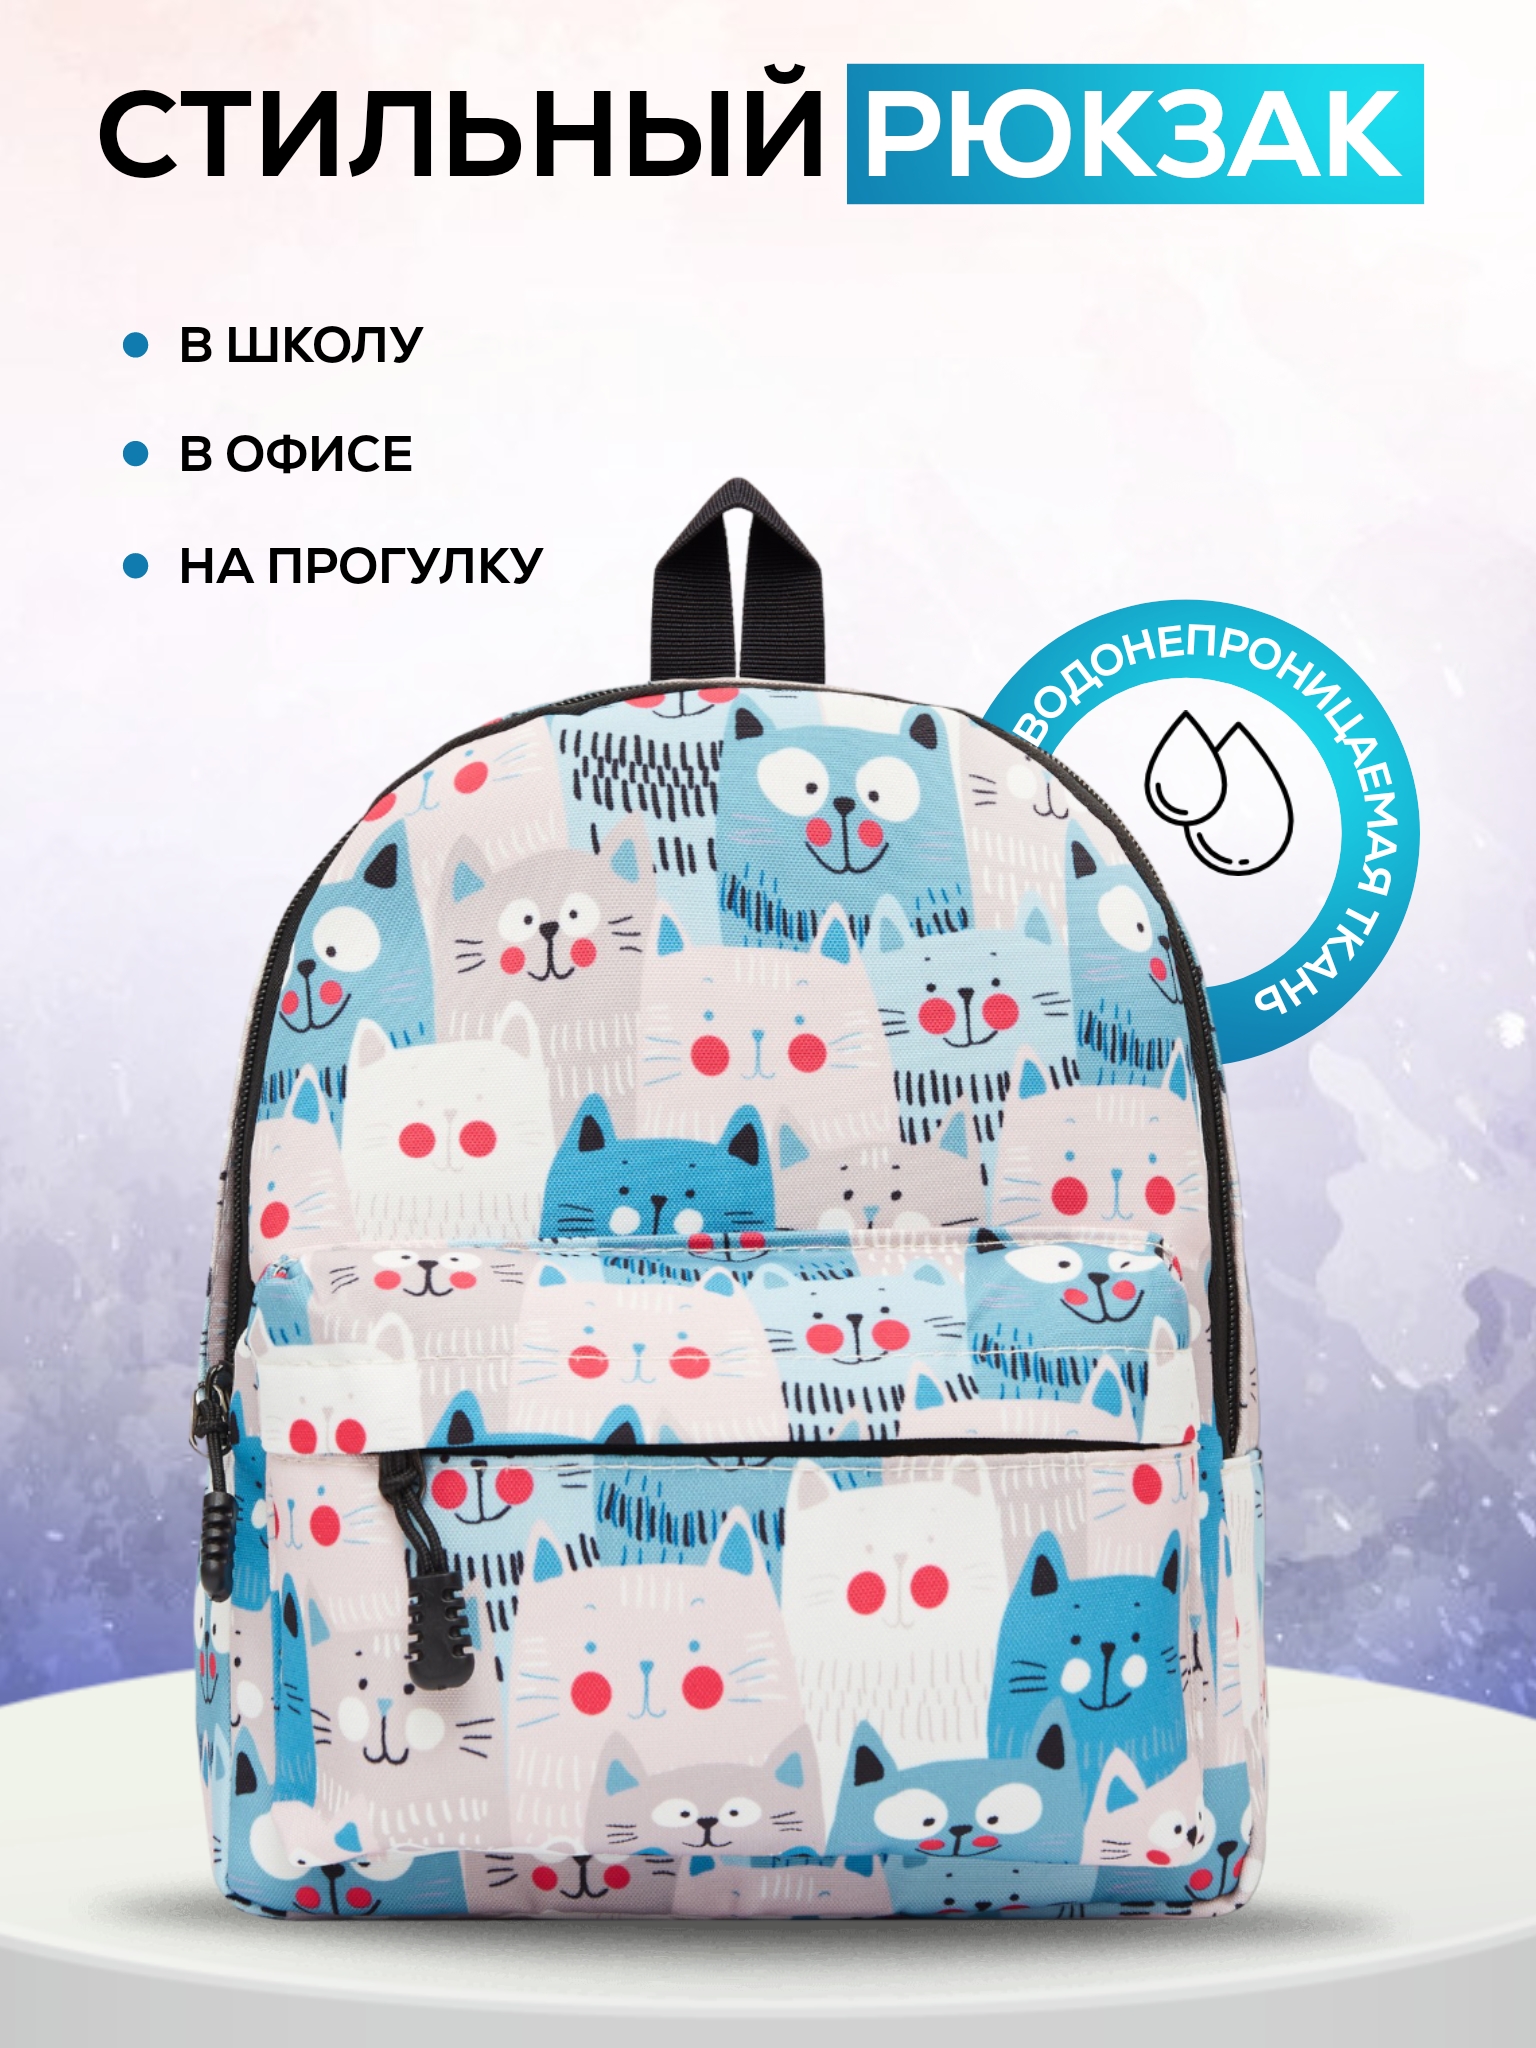 Детский рюкзак BAGS-ART с принтами, унисекс, маленький, бело-голубой